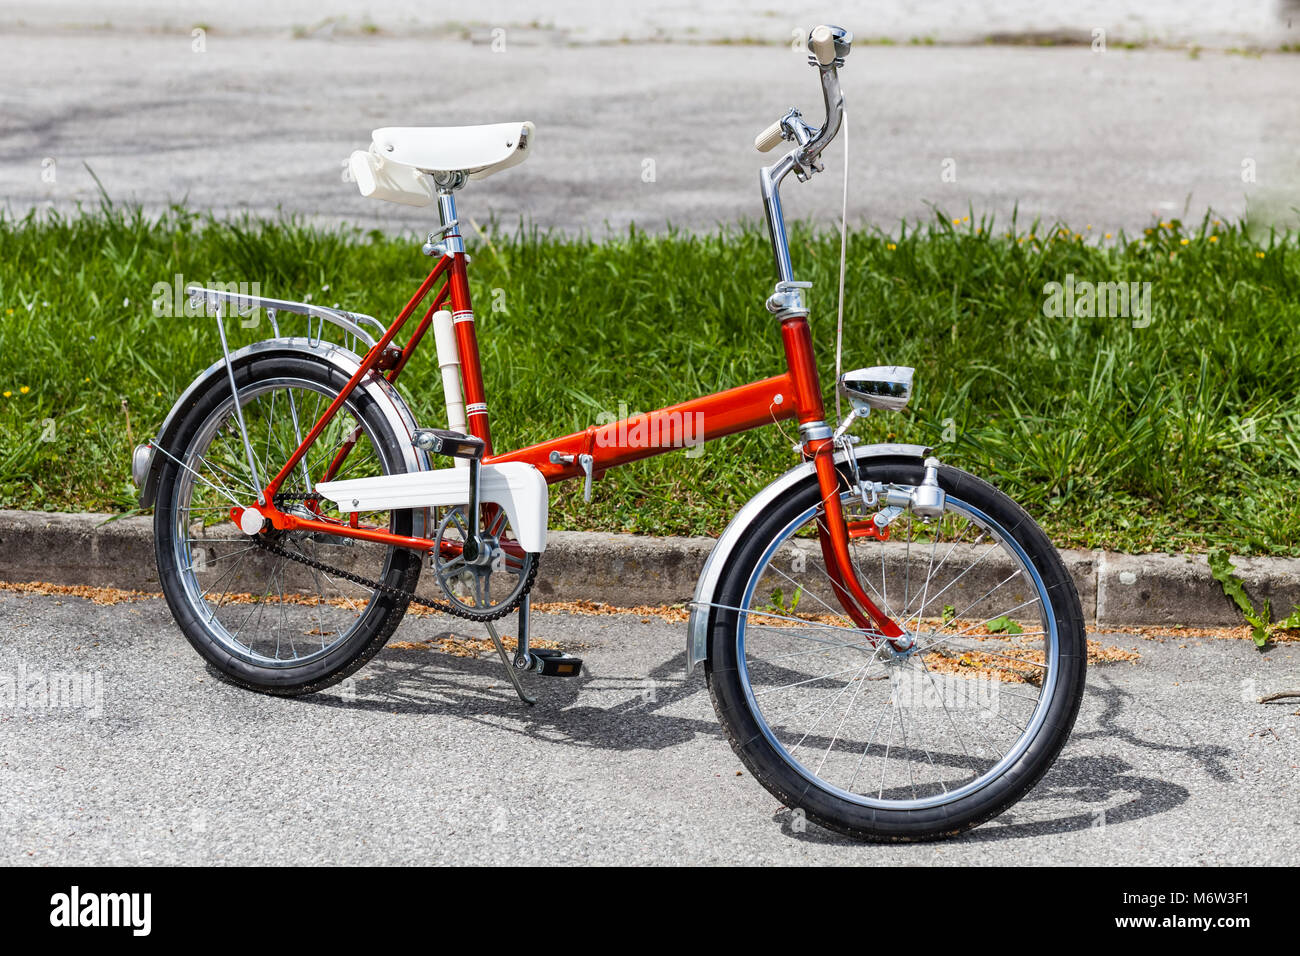 Vintage Classic 1970 red Vélo Pliant Vélo en parfait état parking sur la route près de grass Banque D'Images